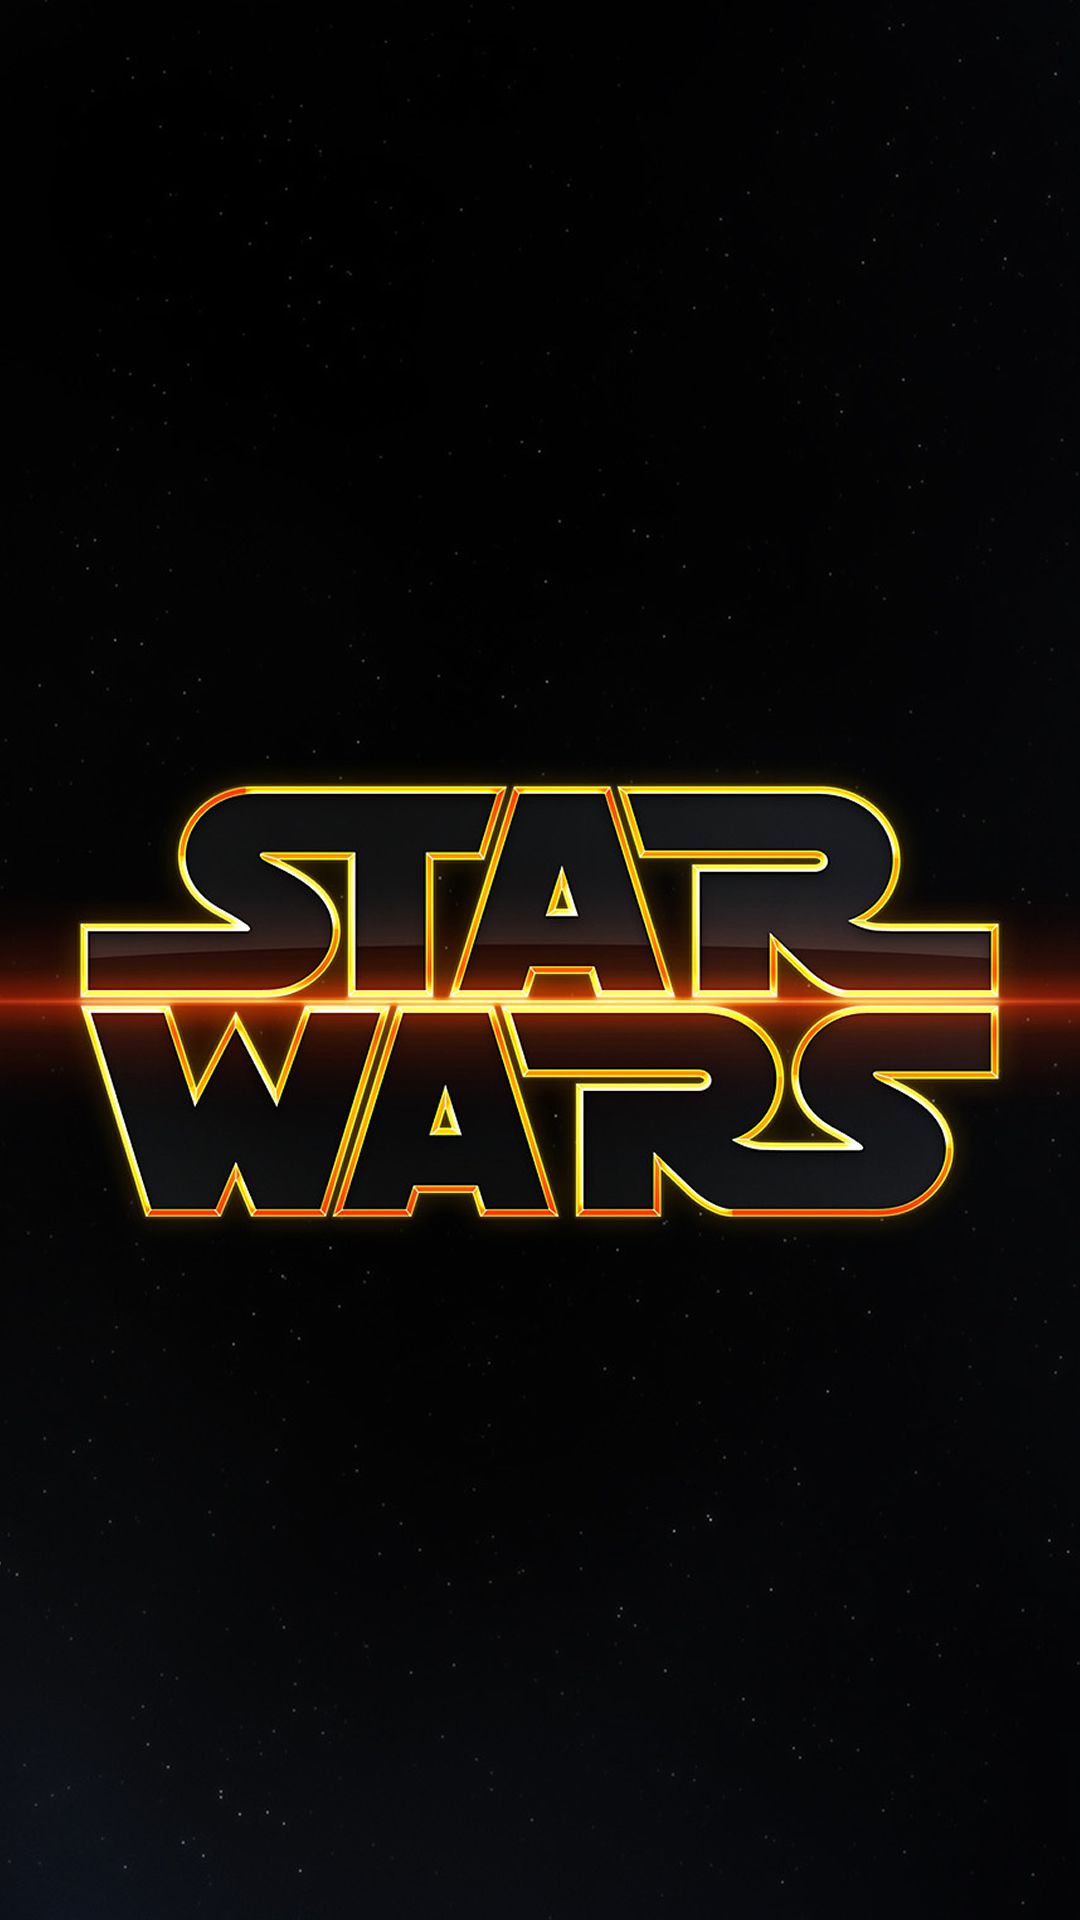 Star Wars Design Art iPhone 6 Wallpaper Download iPhone